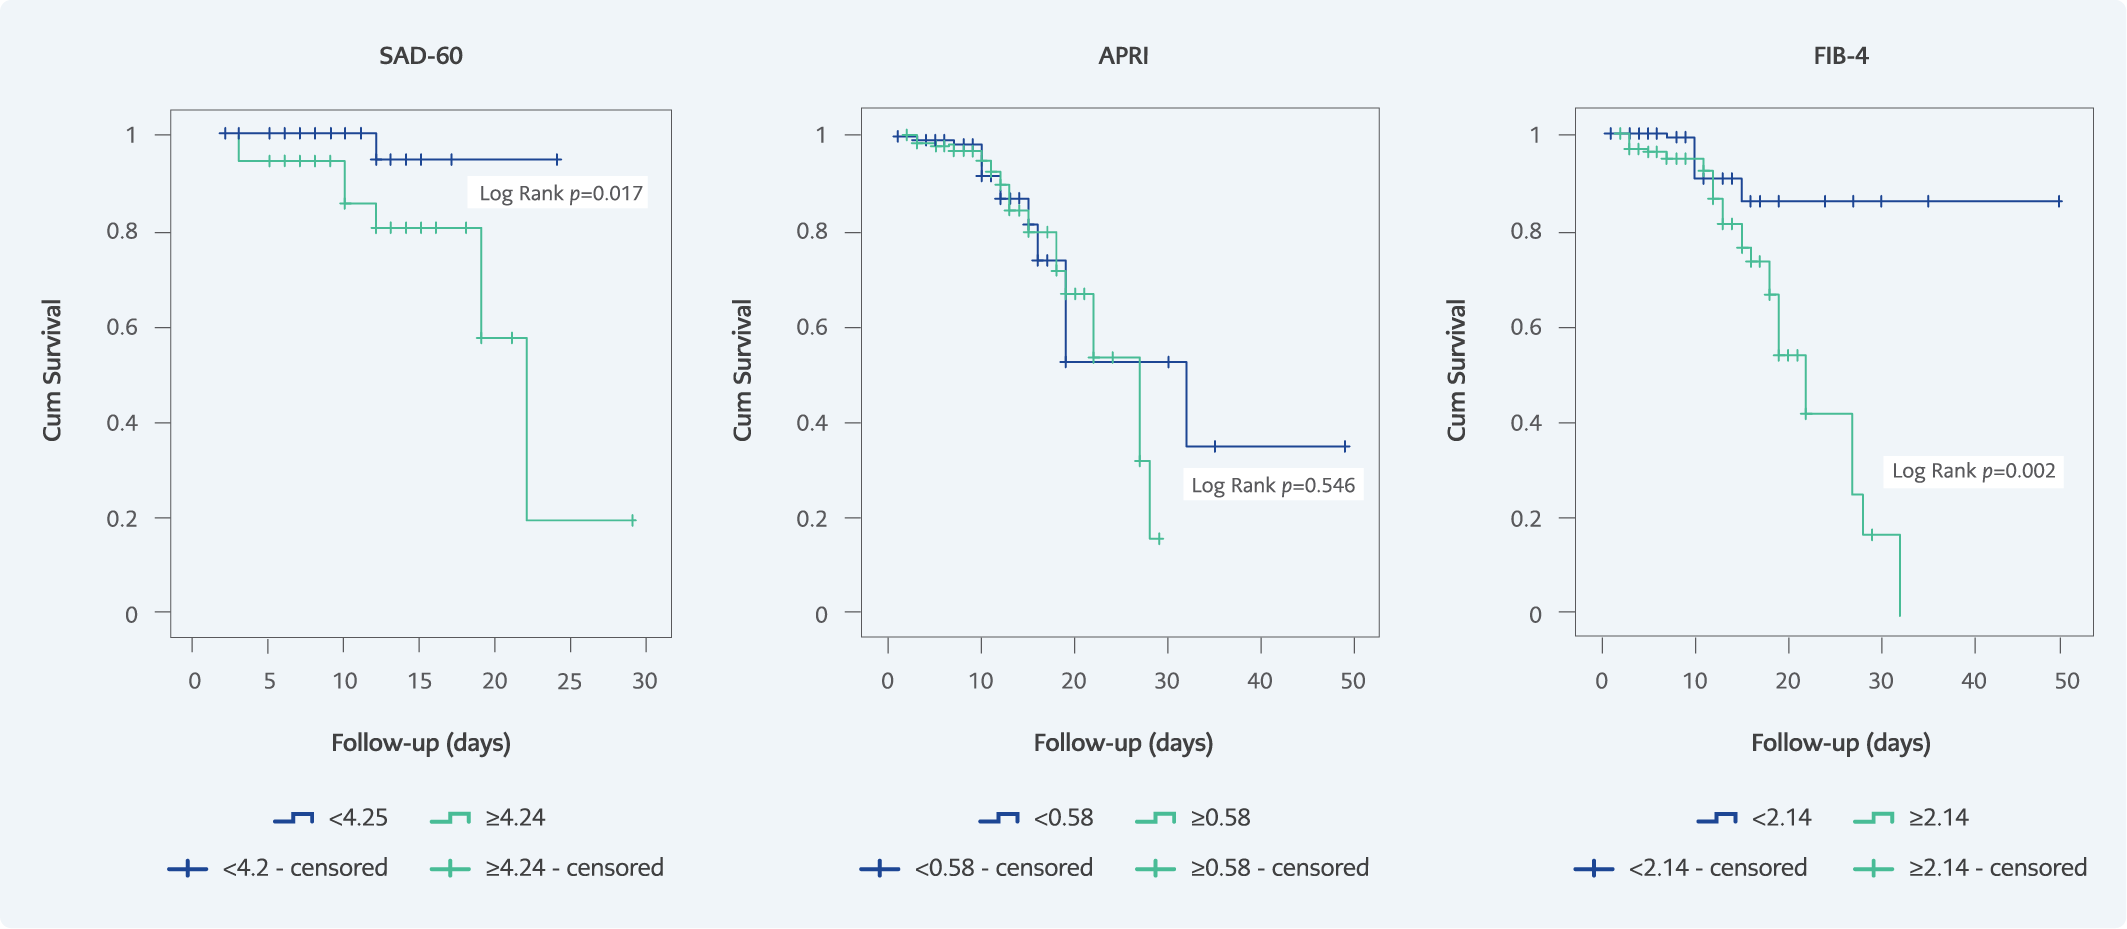 The Role of APRI, FIB-4, and SAD-60 Scores as Predictors of Mortality in COVID-19 Patients